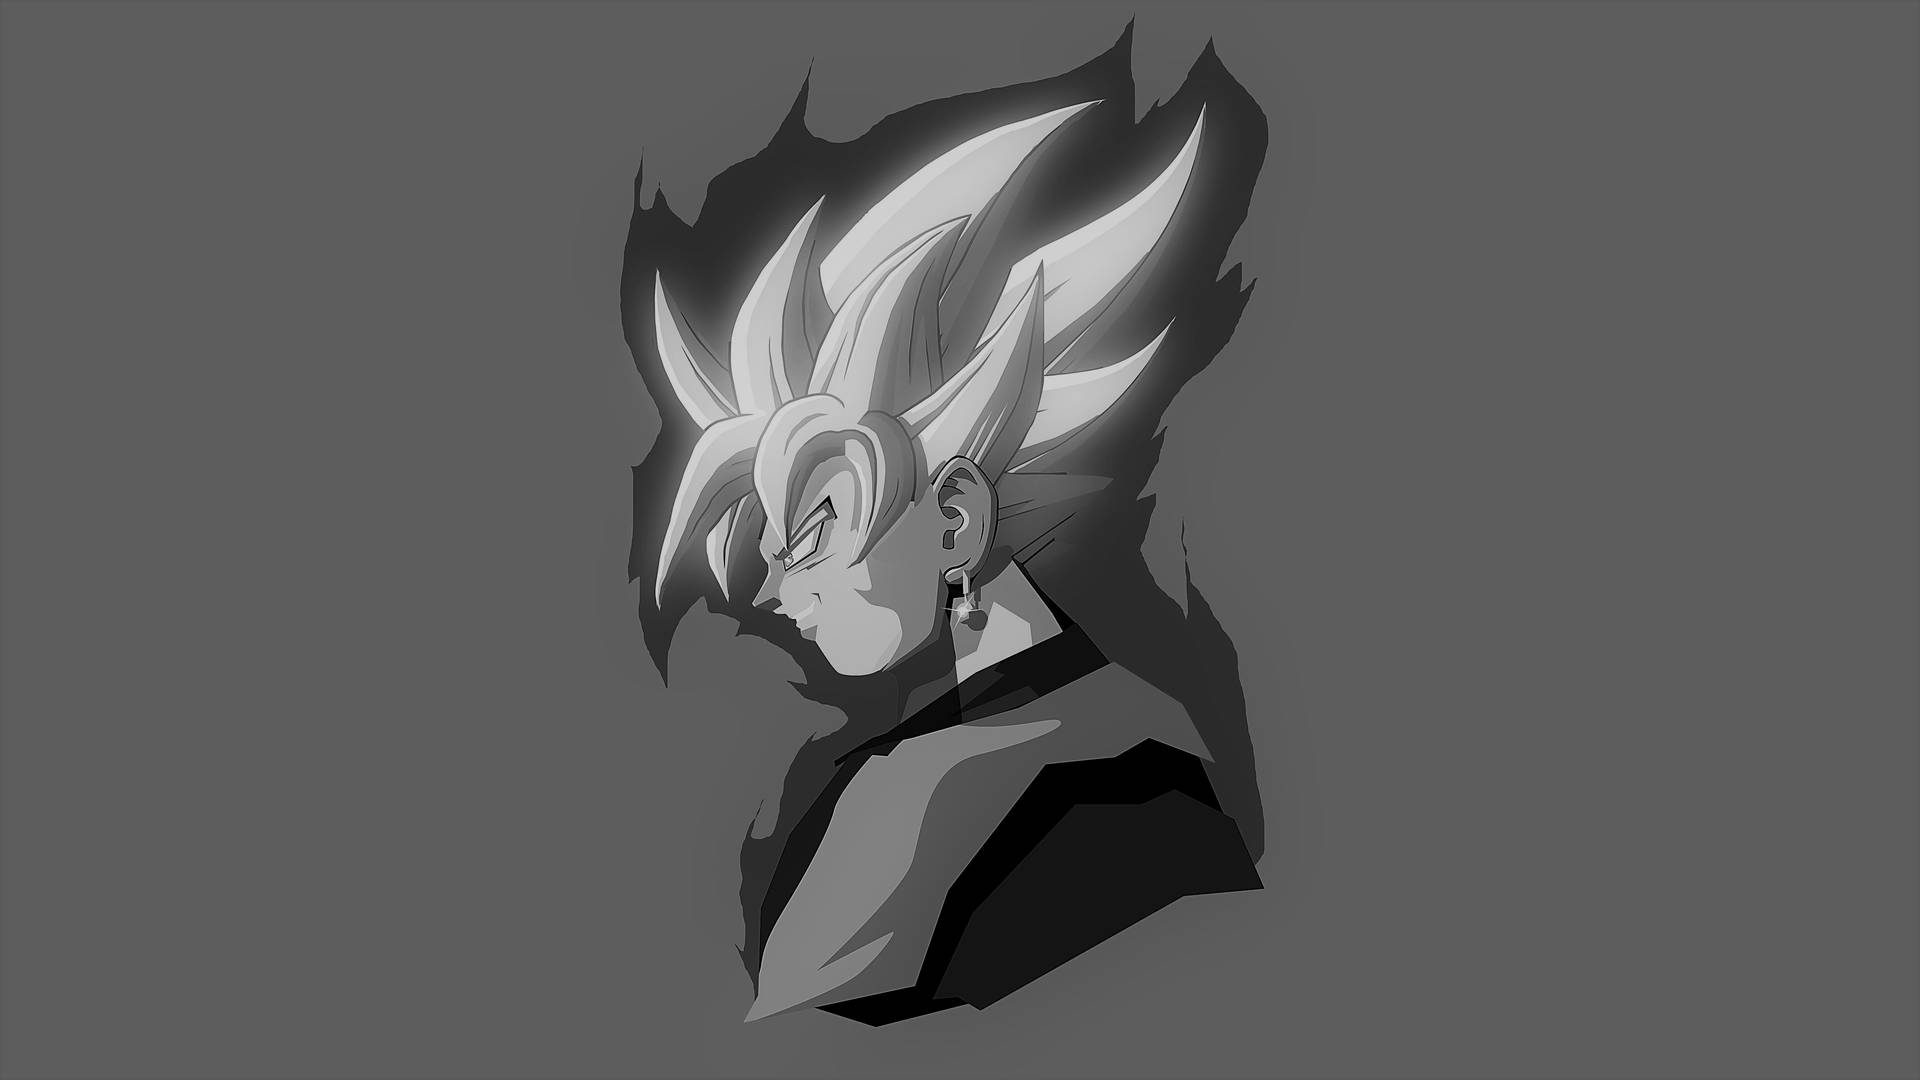 Goku i sort og hvid Wallpaper